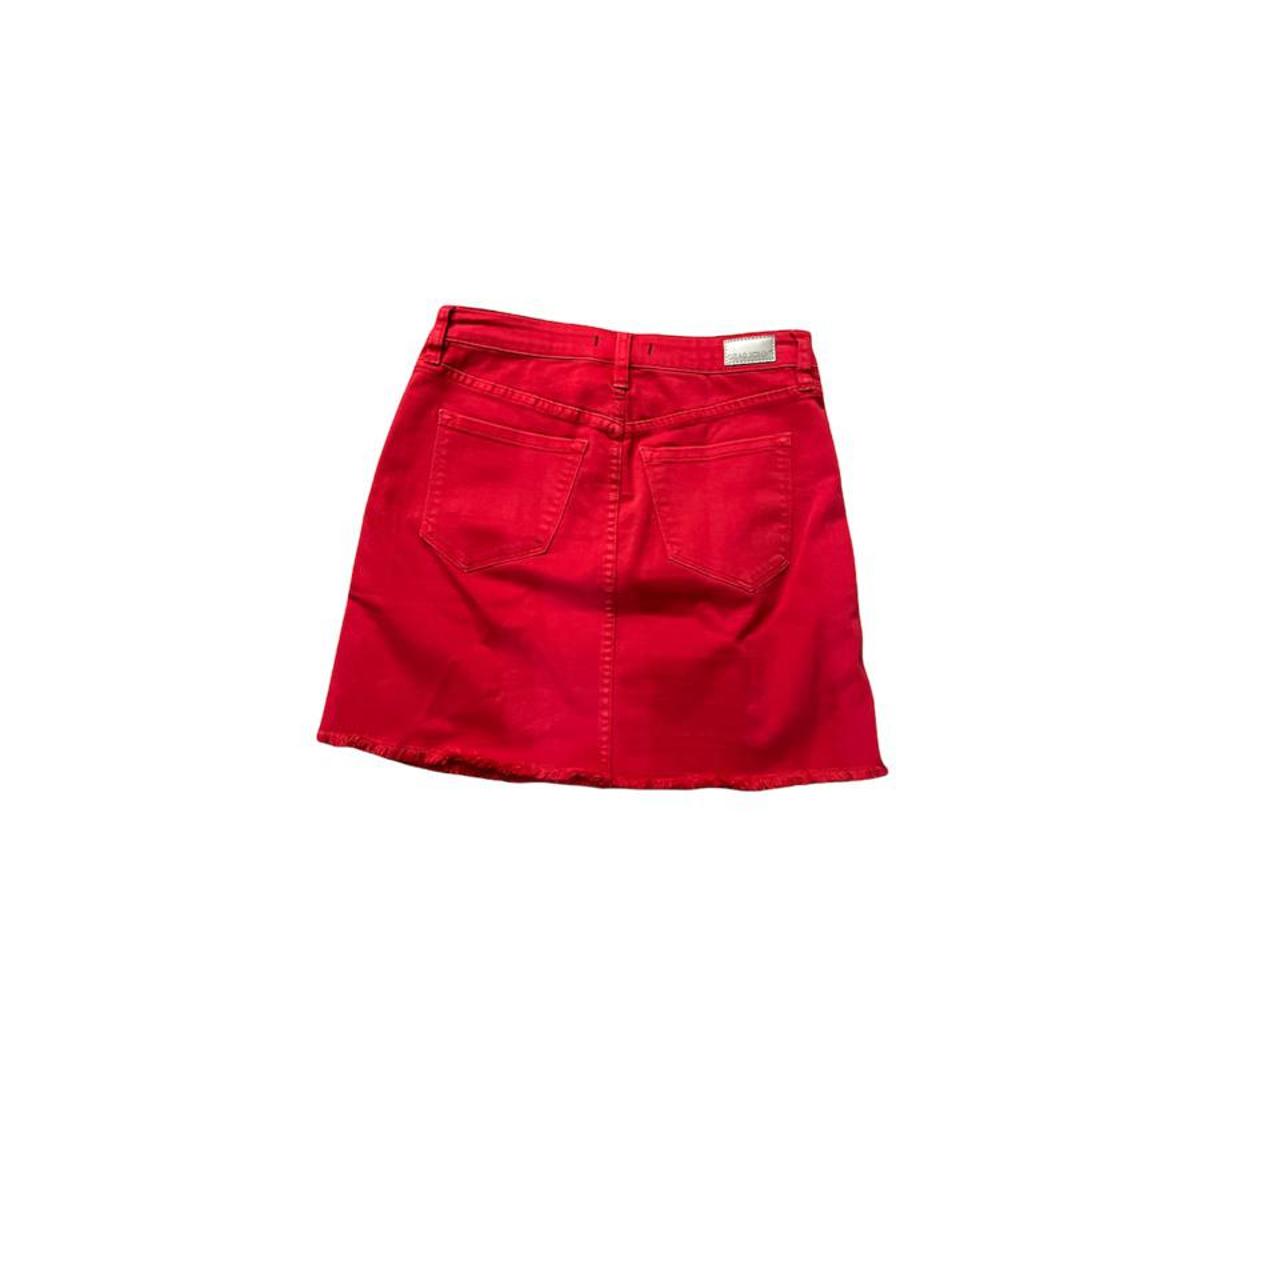 Product Image 2 - dear john red denim skirt